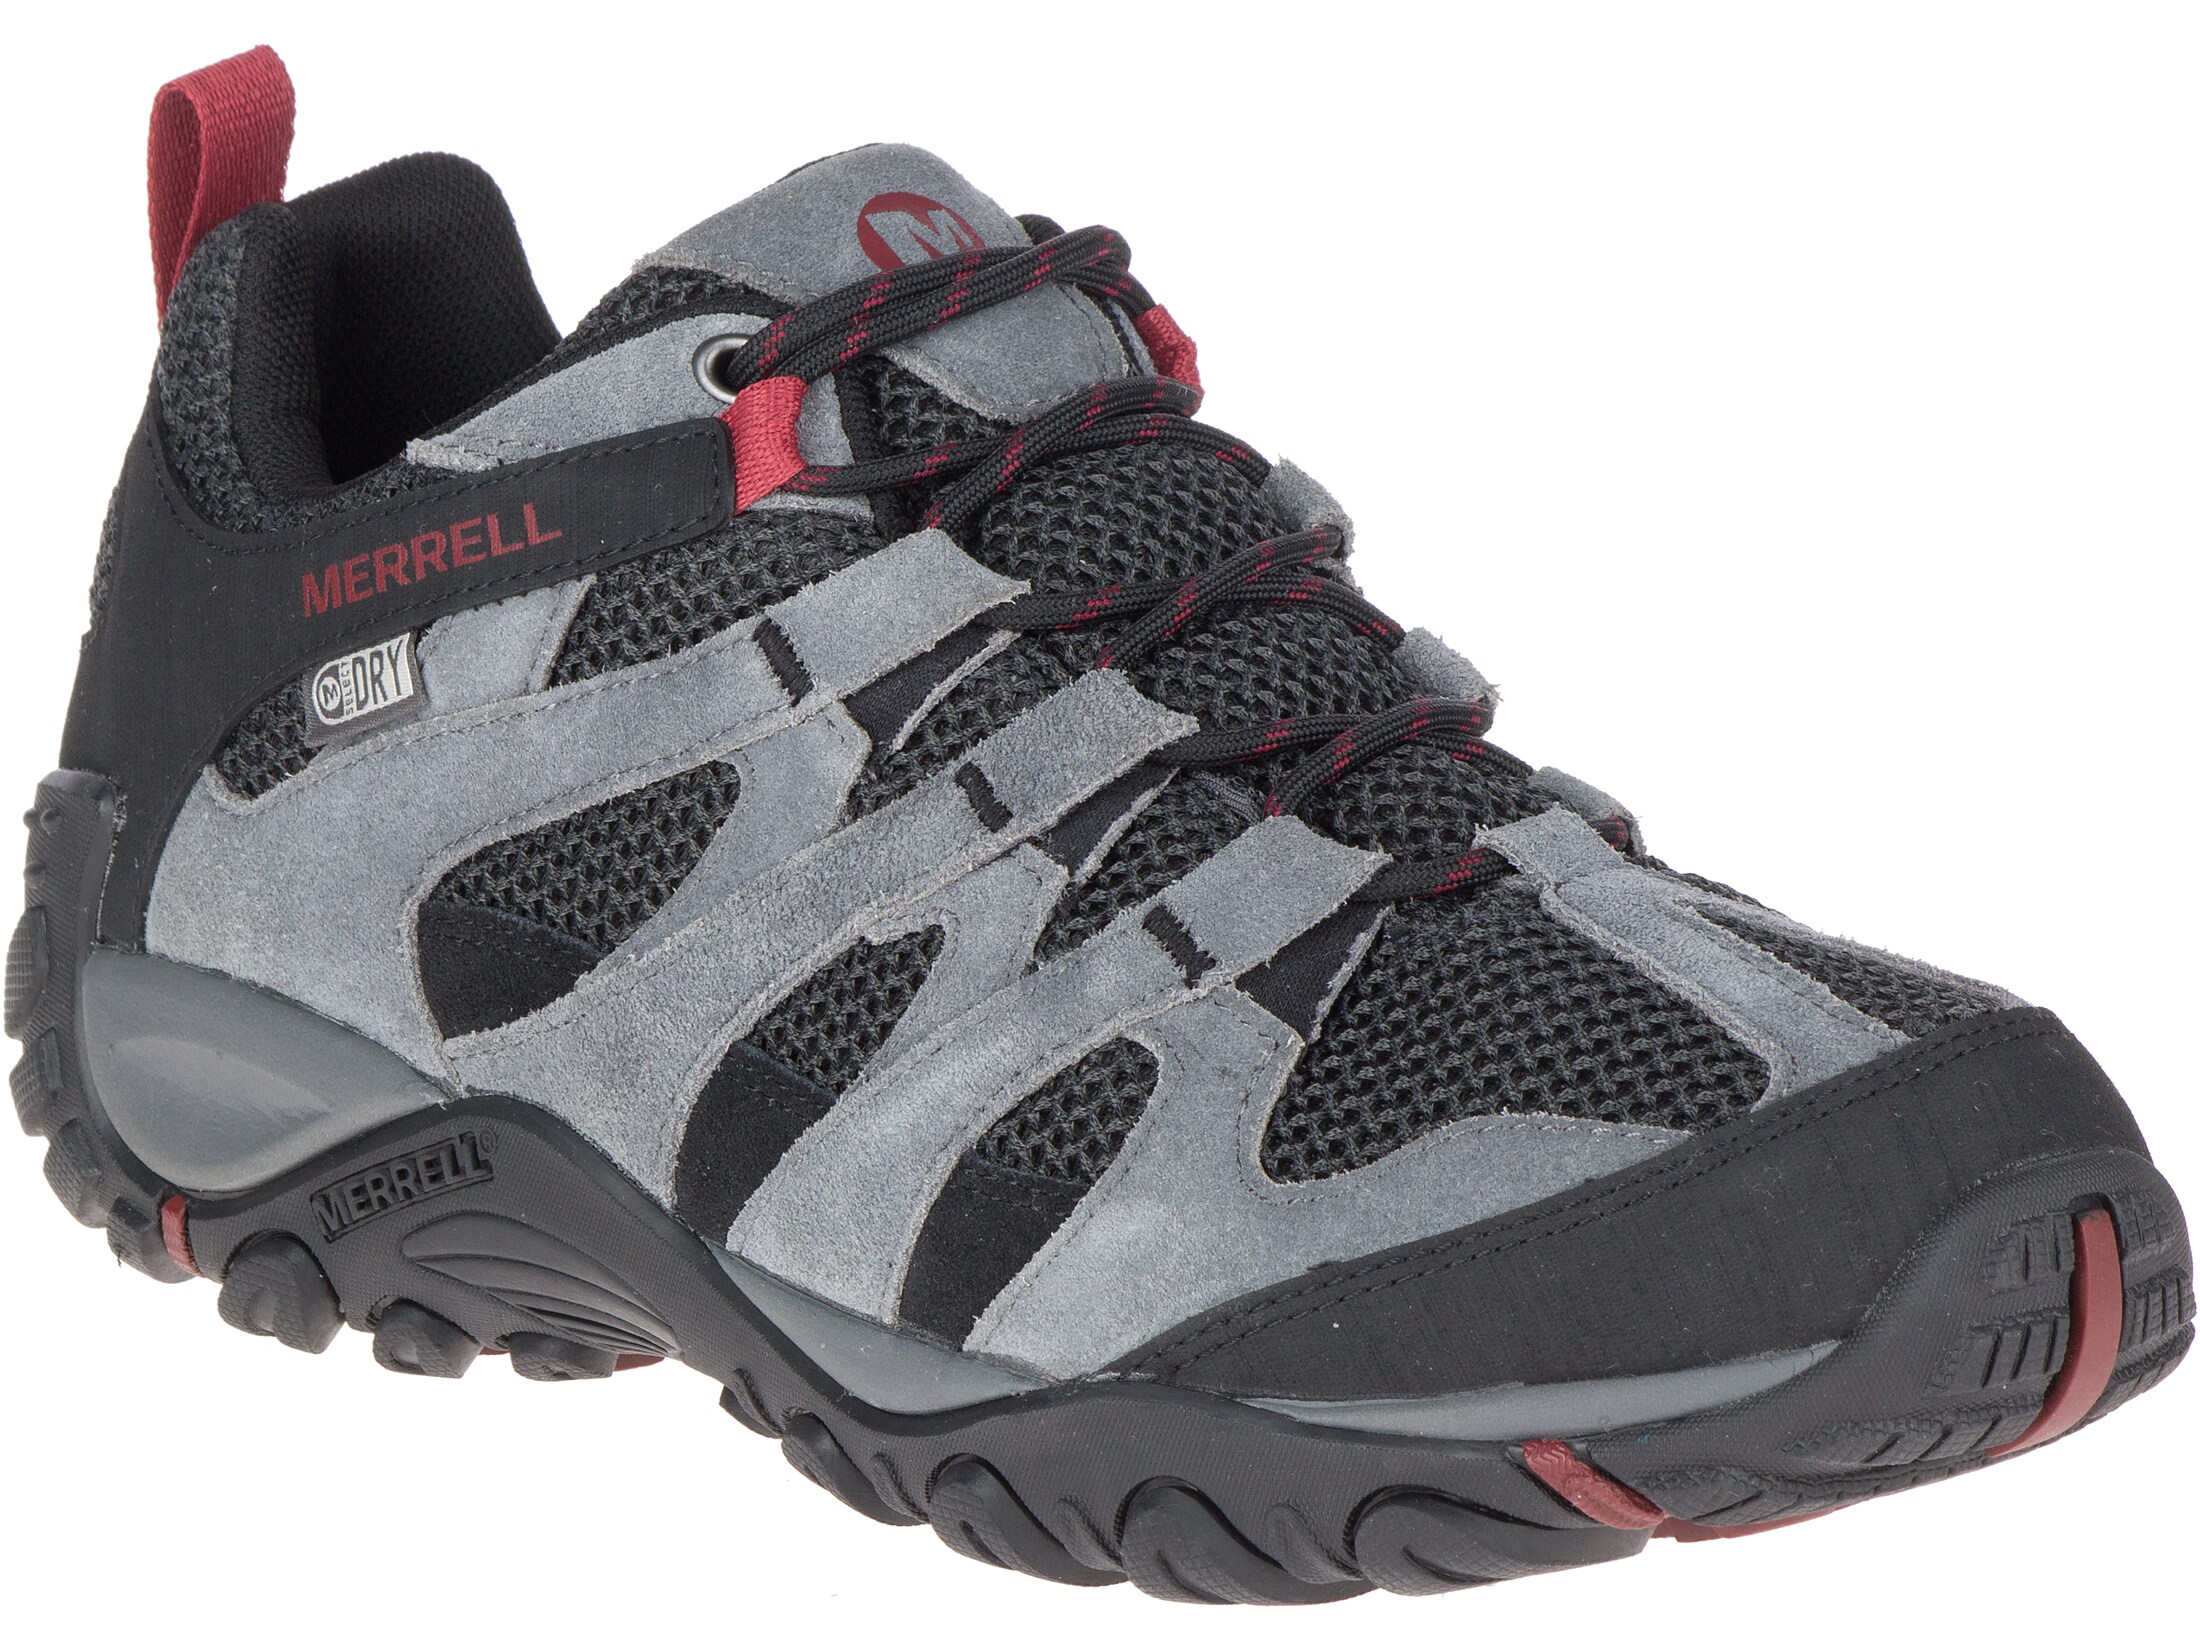 Merrell Alverstone Waterproof Hiking Shoes Suede Boulder Men's 8.5 D